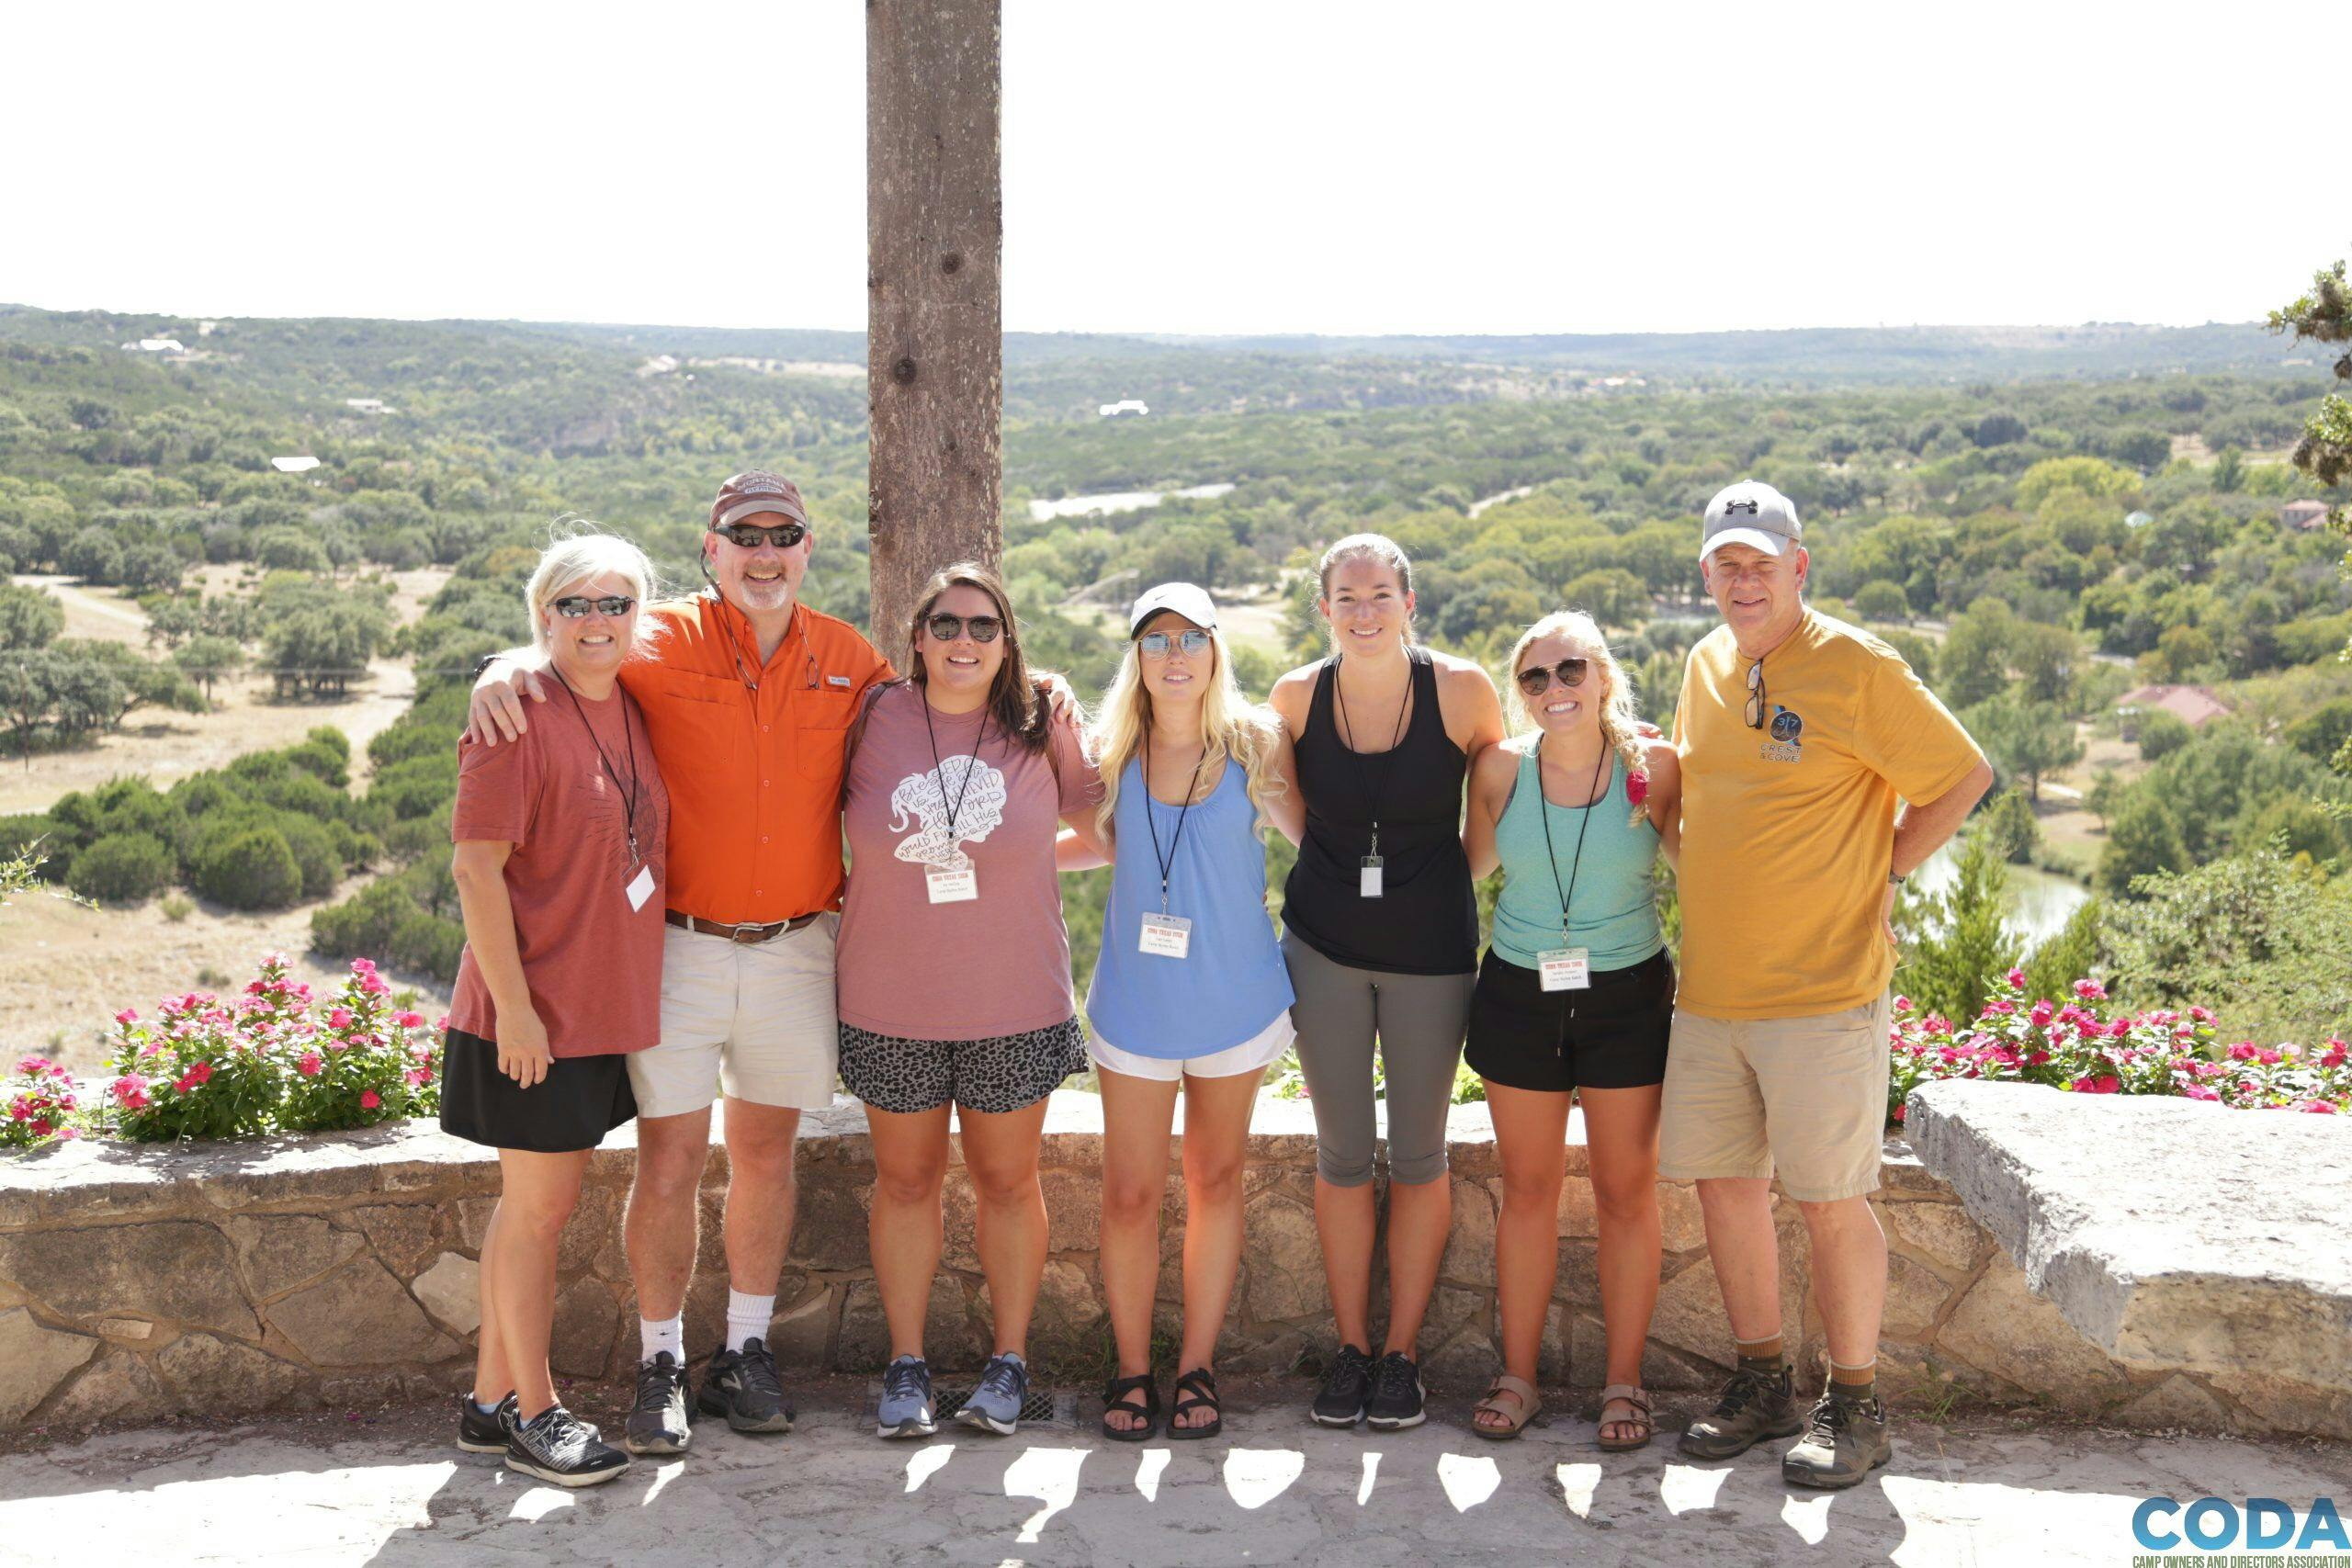 Camp Skyline Takes on Texas